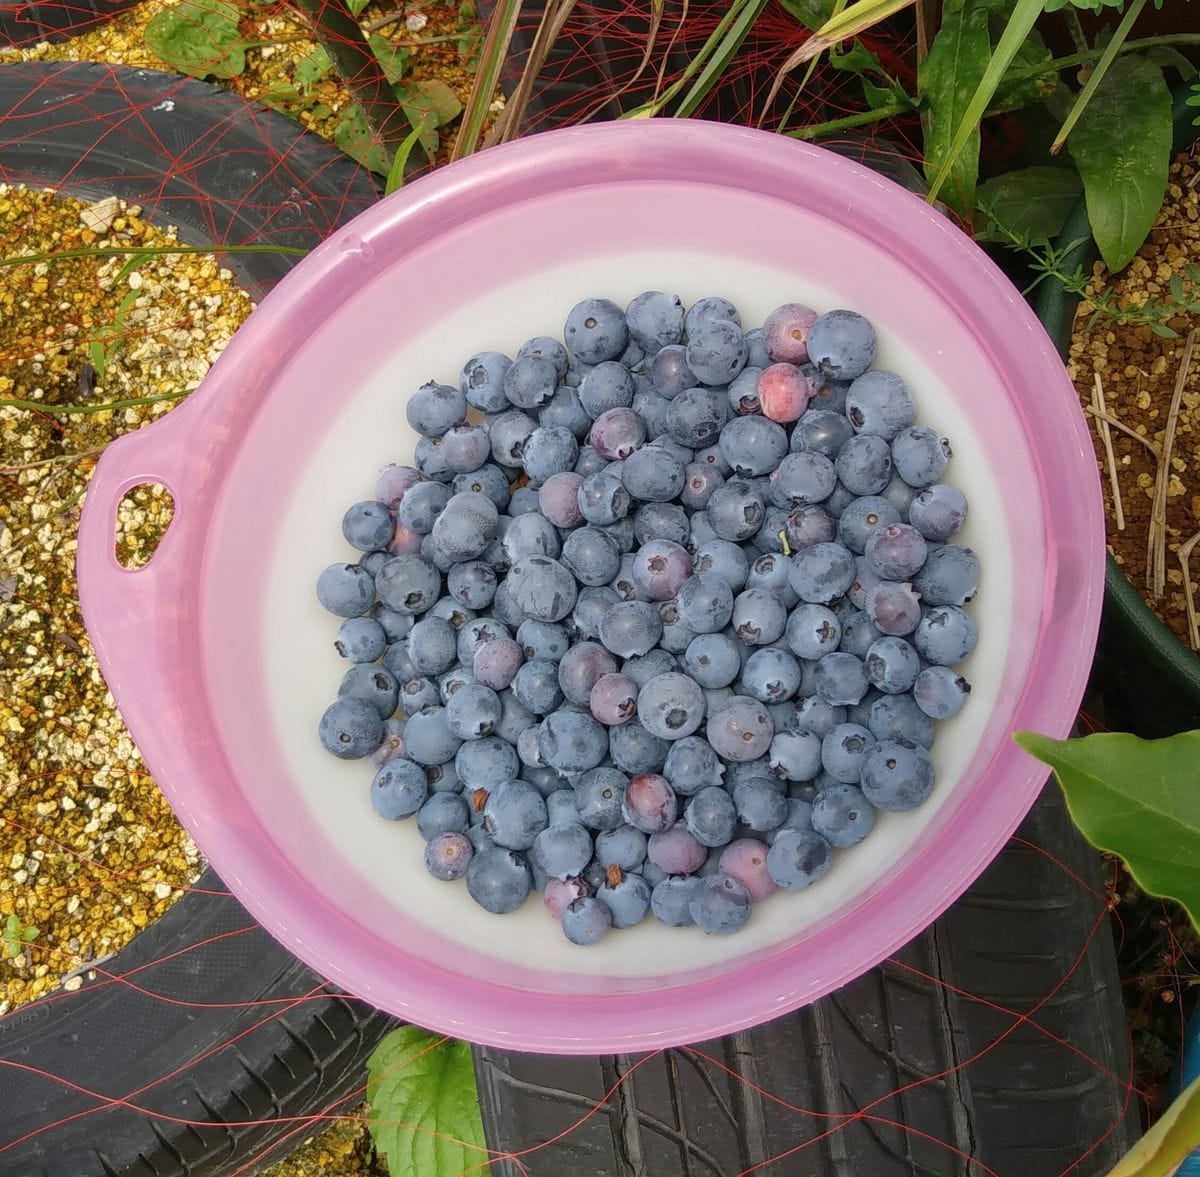 ブルーベリーの収穫と梅漬け作業